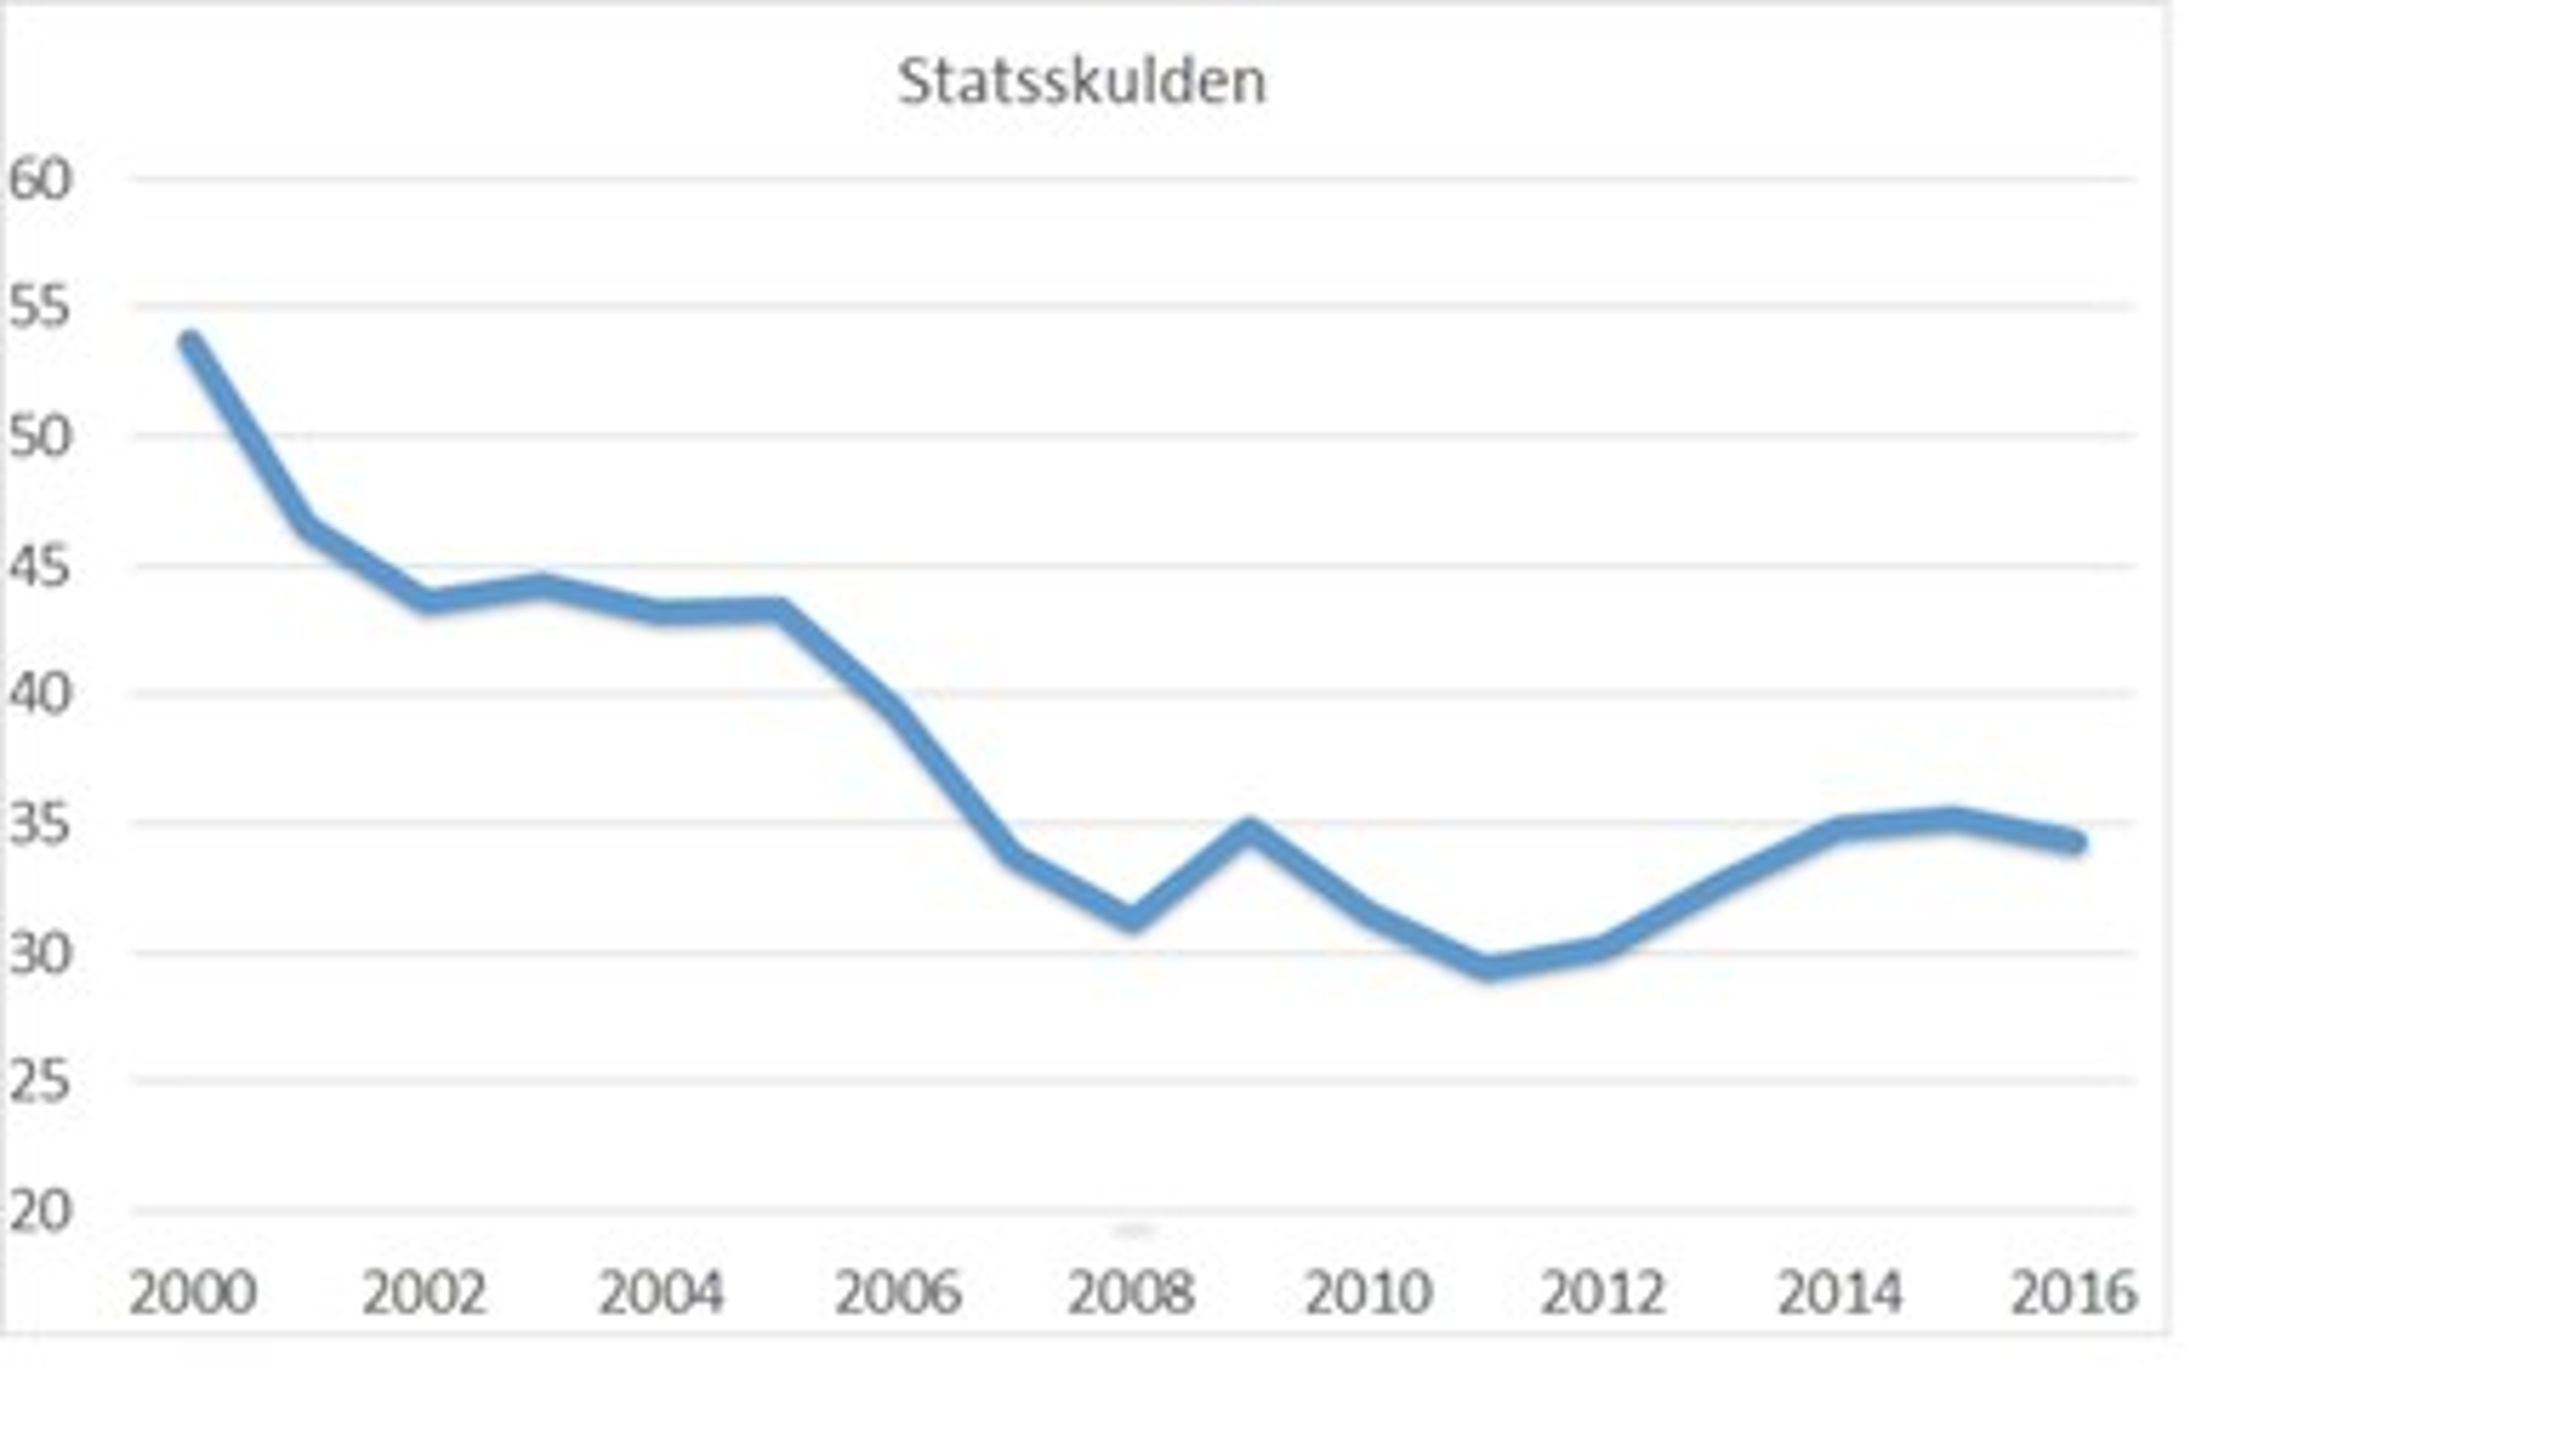 <b>Statsskulden i procent av BNP</b><b>. Regeringens prognos för 2015 och framåt. </b><br>Källa: regeringen&nbsp;